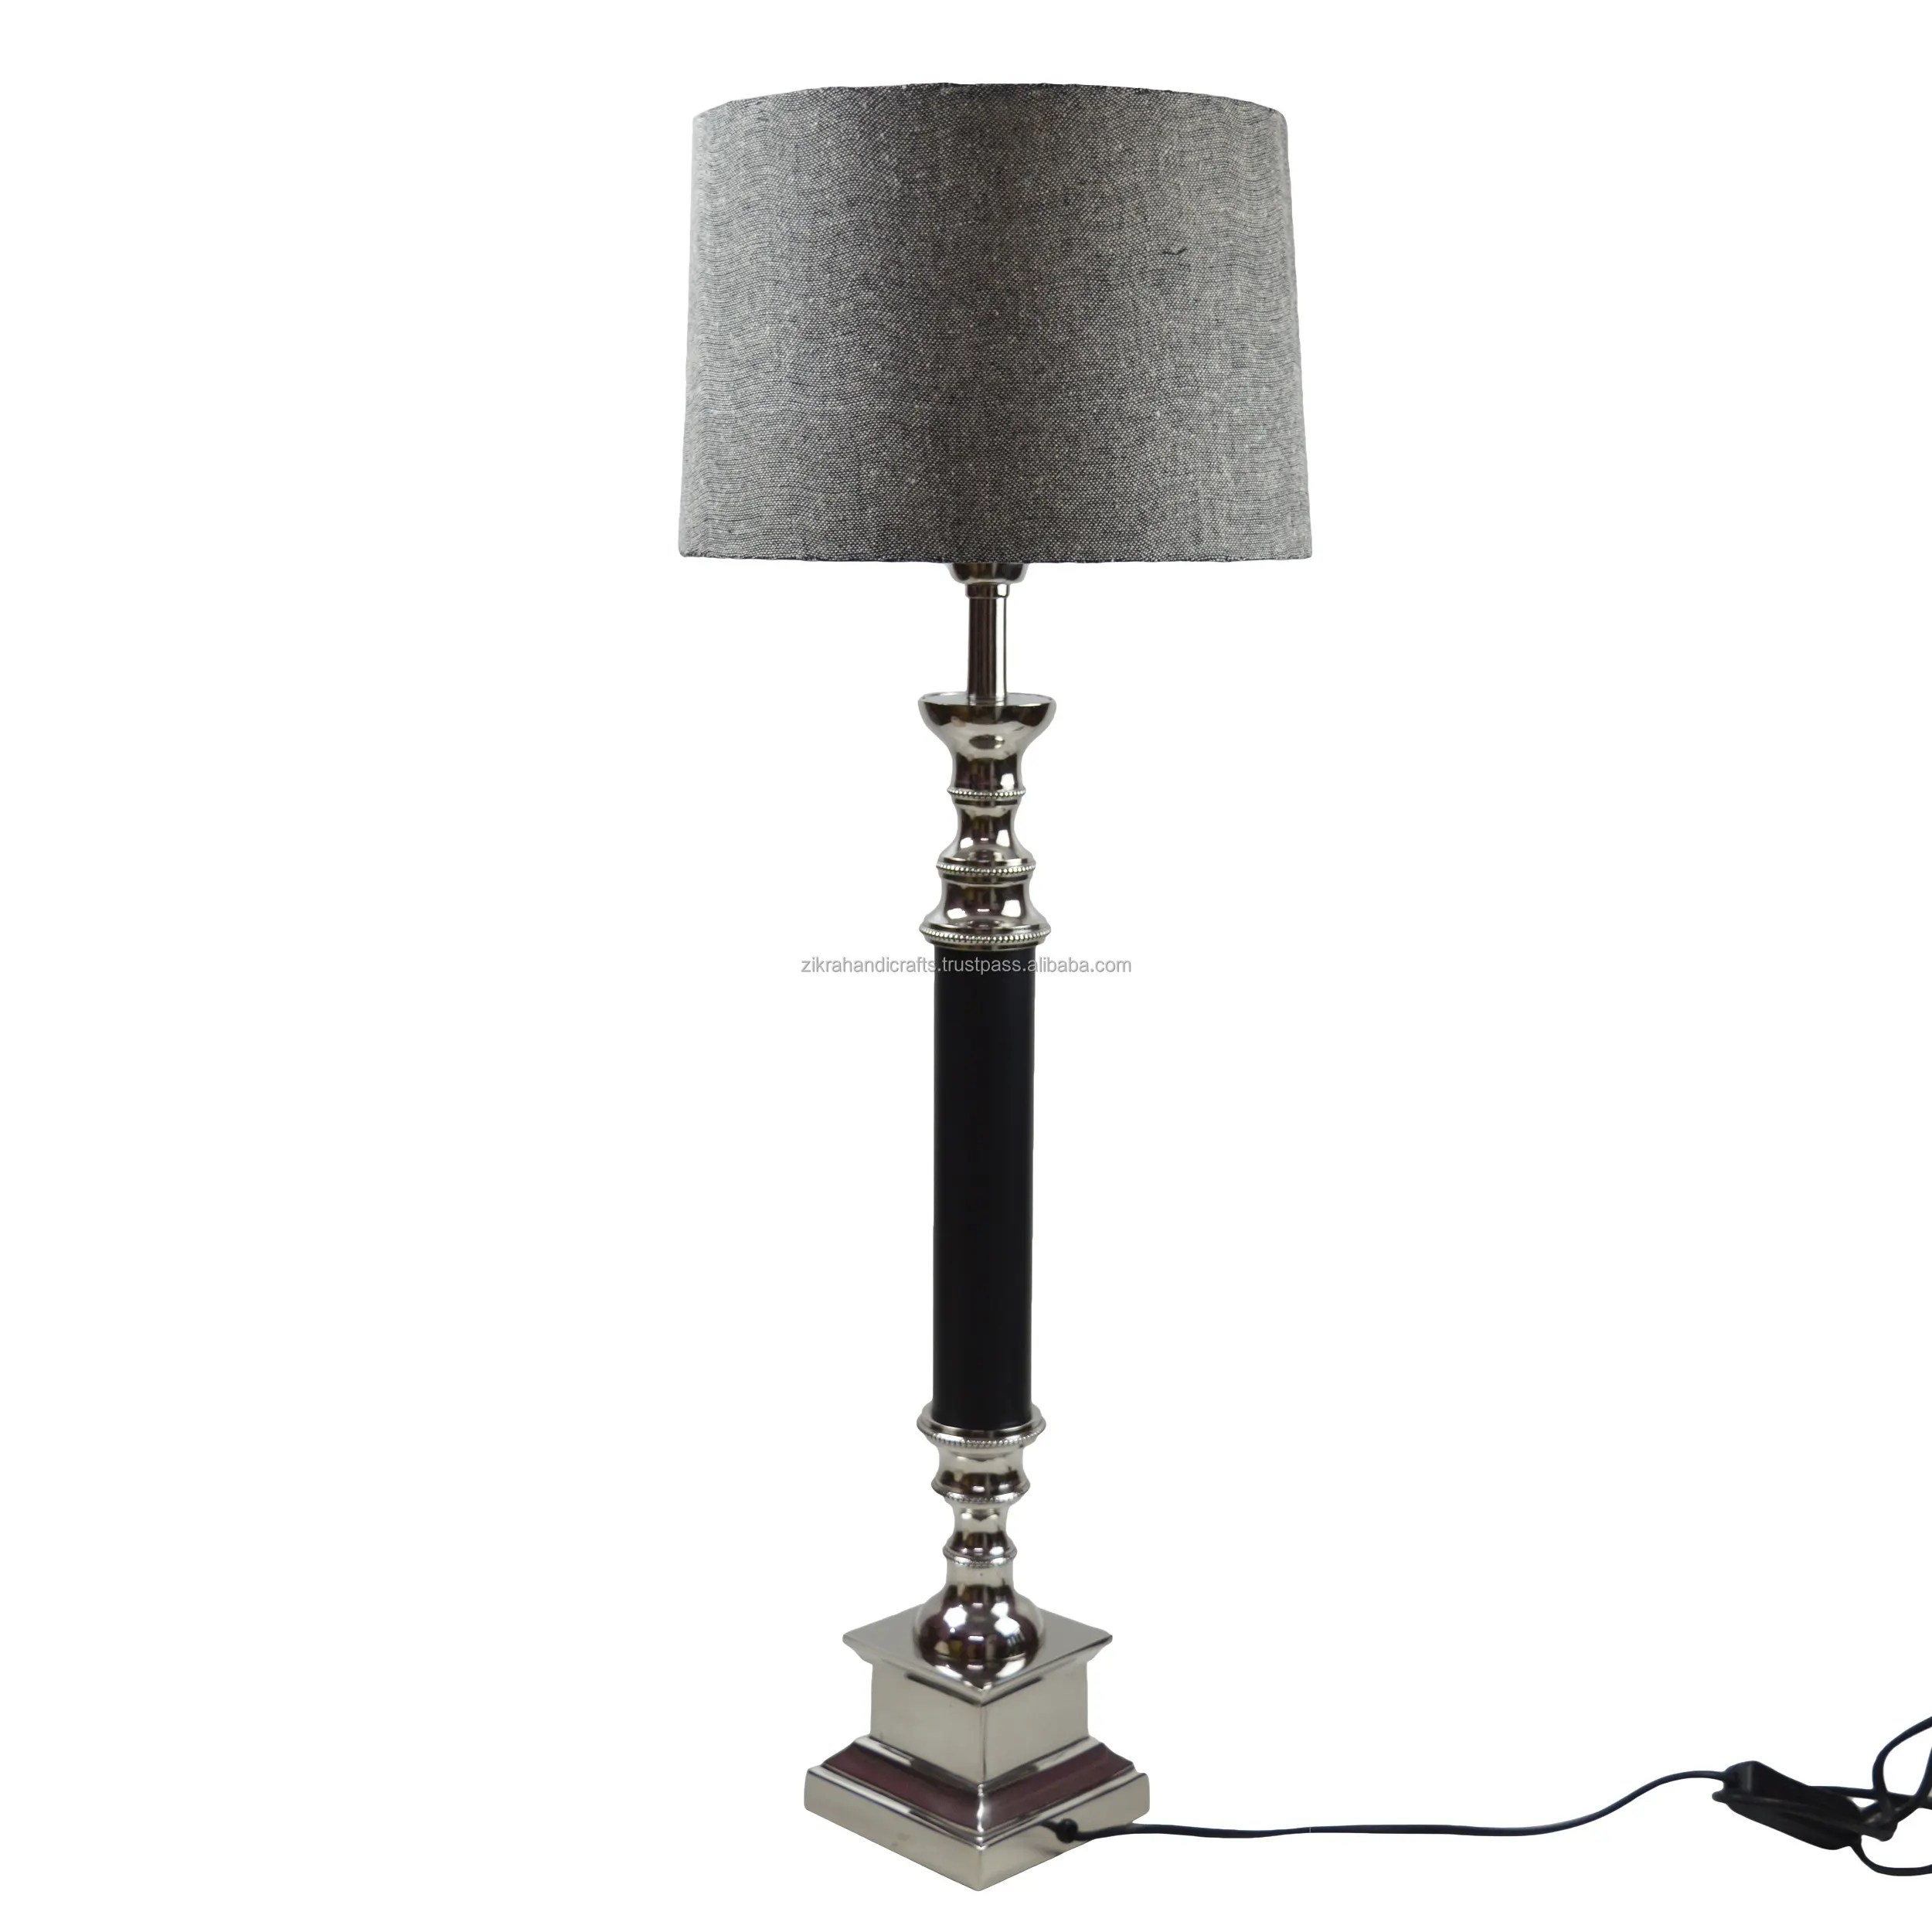 Koninklijke Tafellamp Met Luxe Afwerking Nieuwste Ontwerp Decoratieve Metalen Lamp Vloer En Interieur Goedkope Antieke Lampen